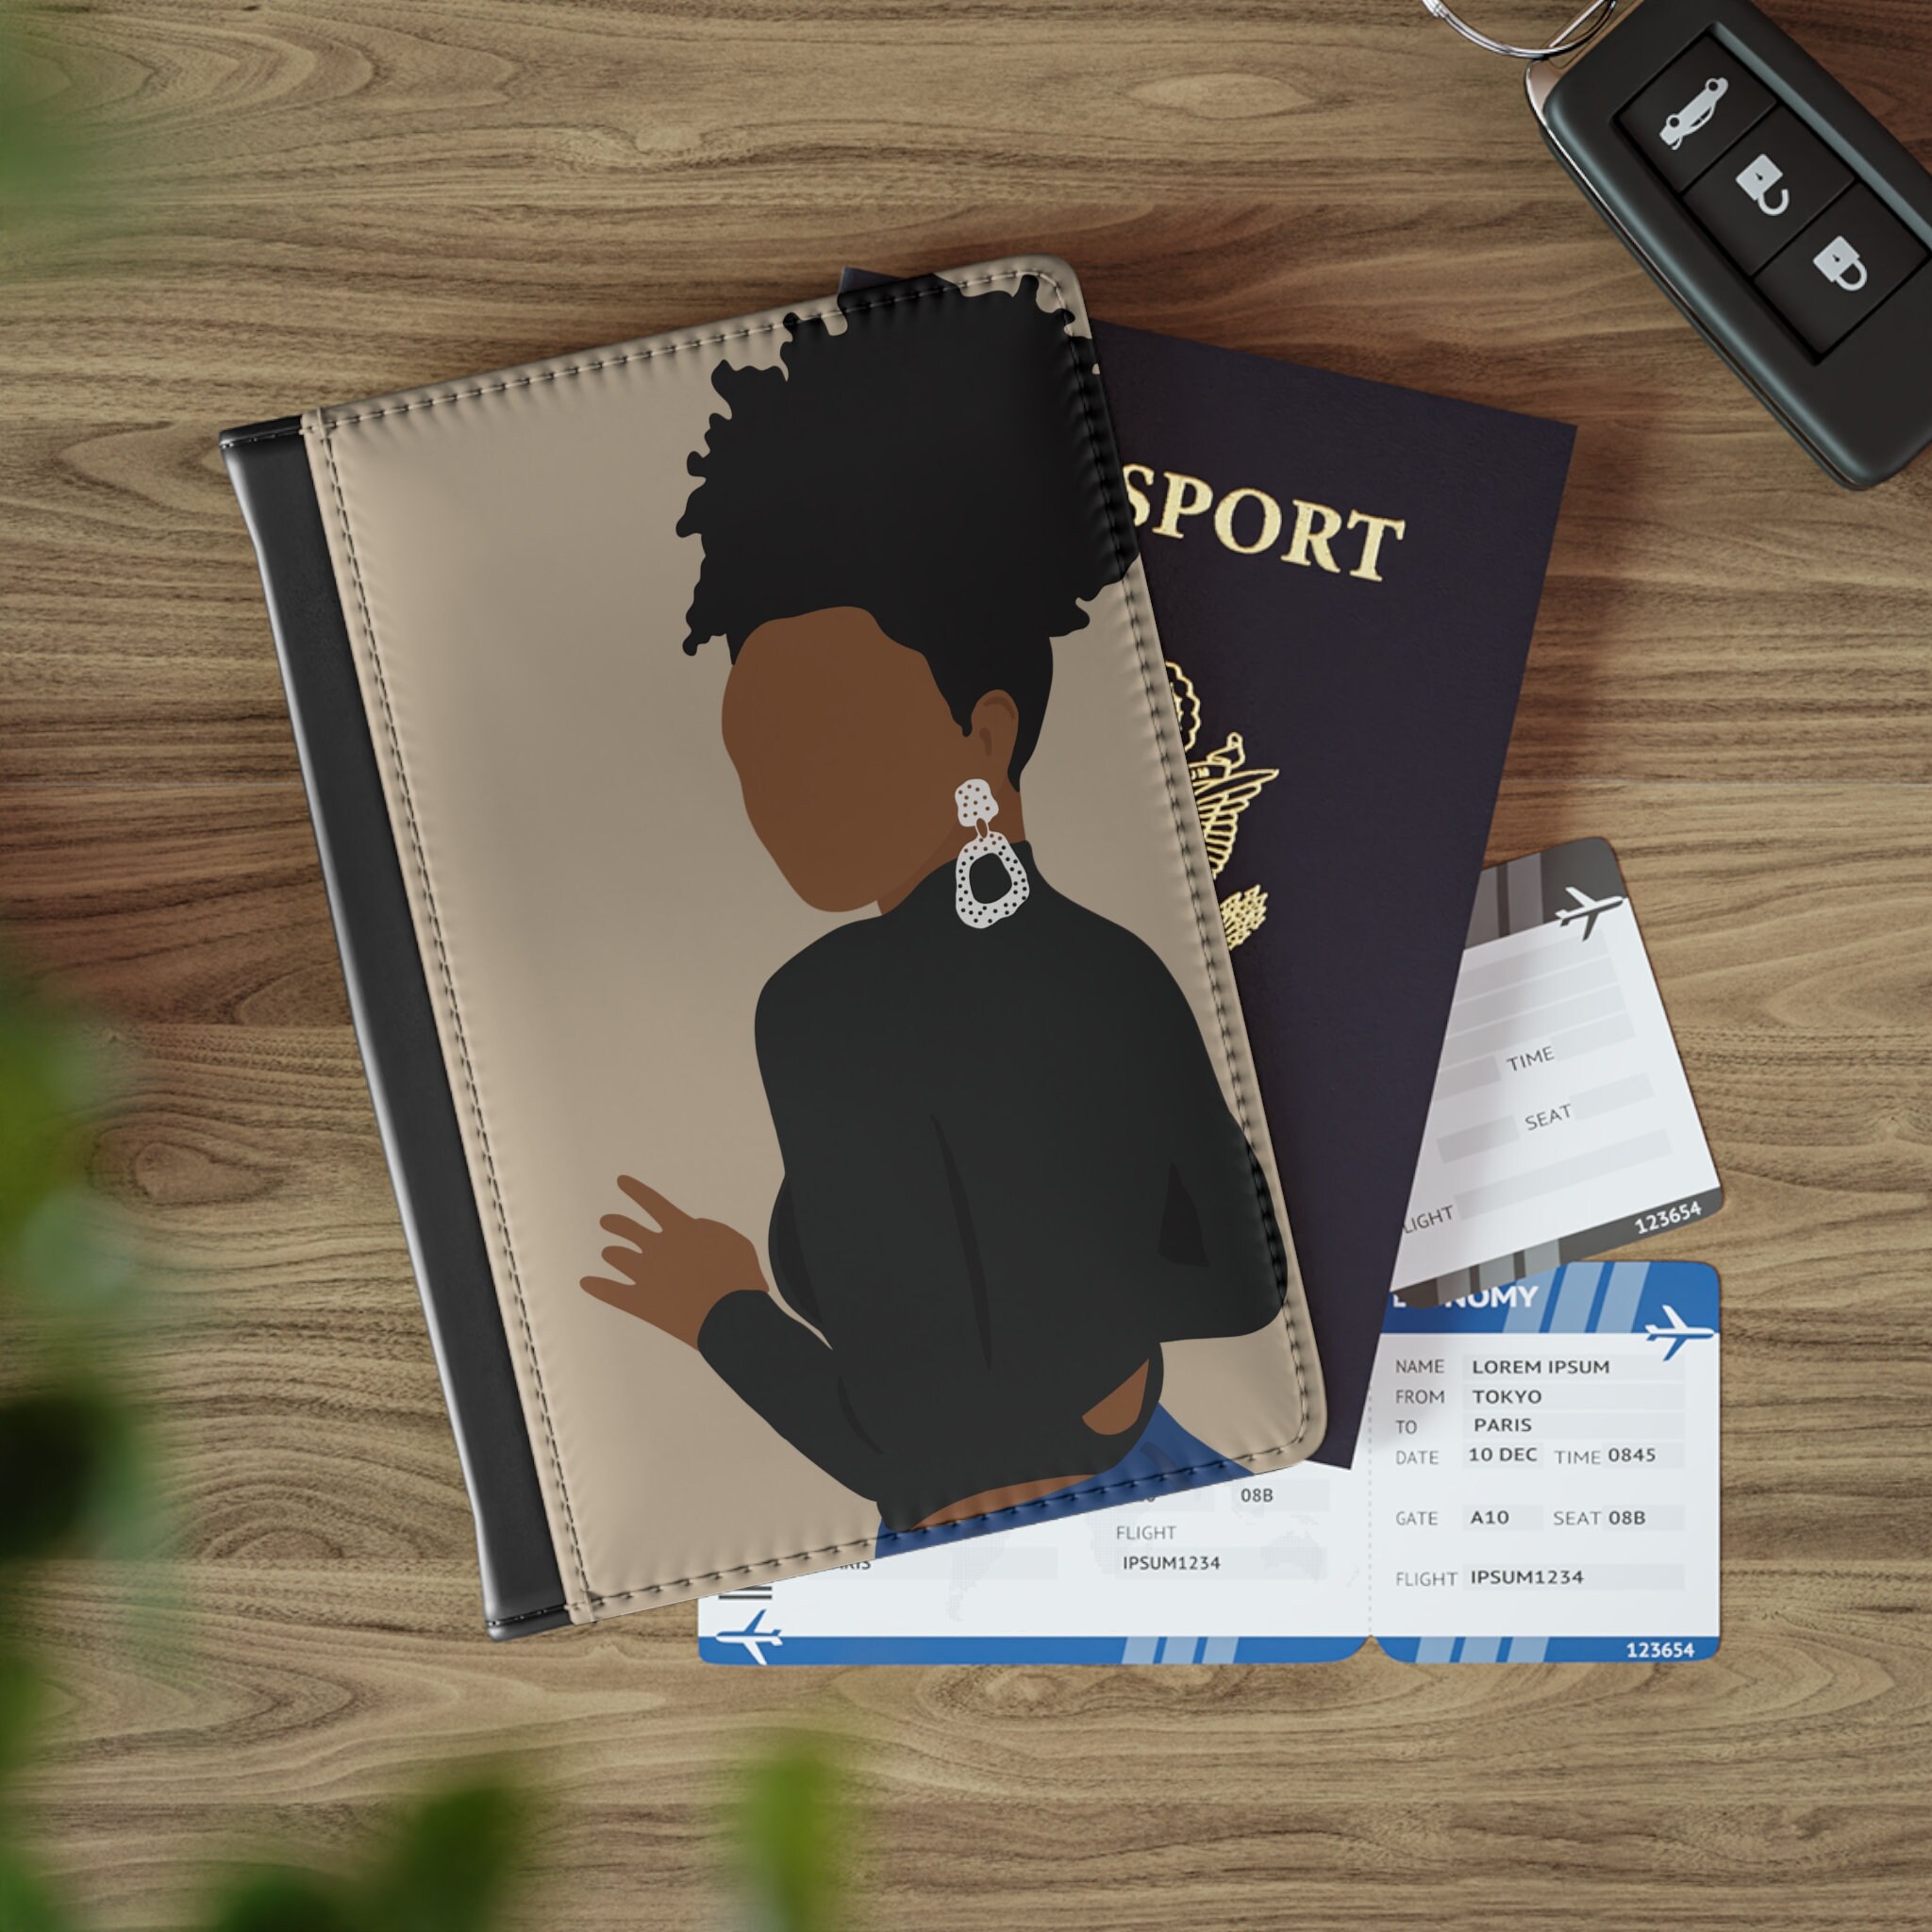  GoldLock Passport Cover Black Panther Passport Case Travel  Cover The Passport Asgard Passport Holder (Wakada passport)